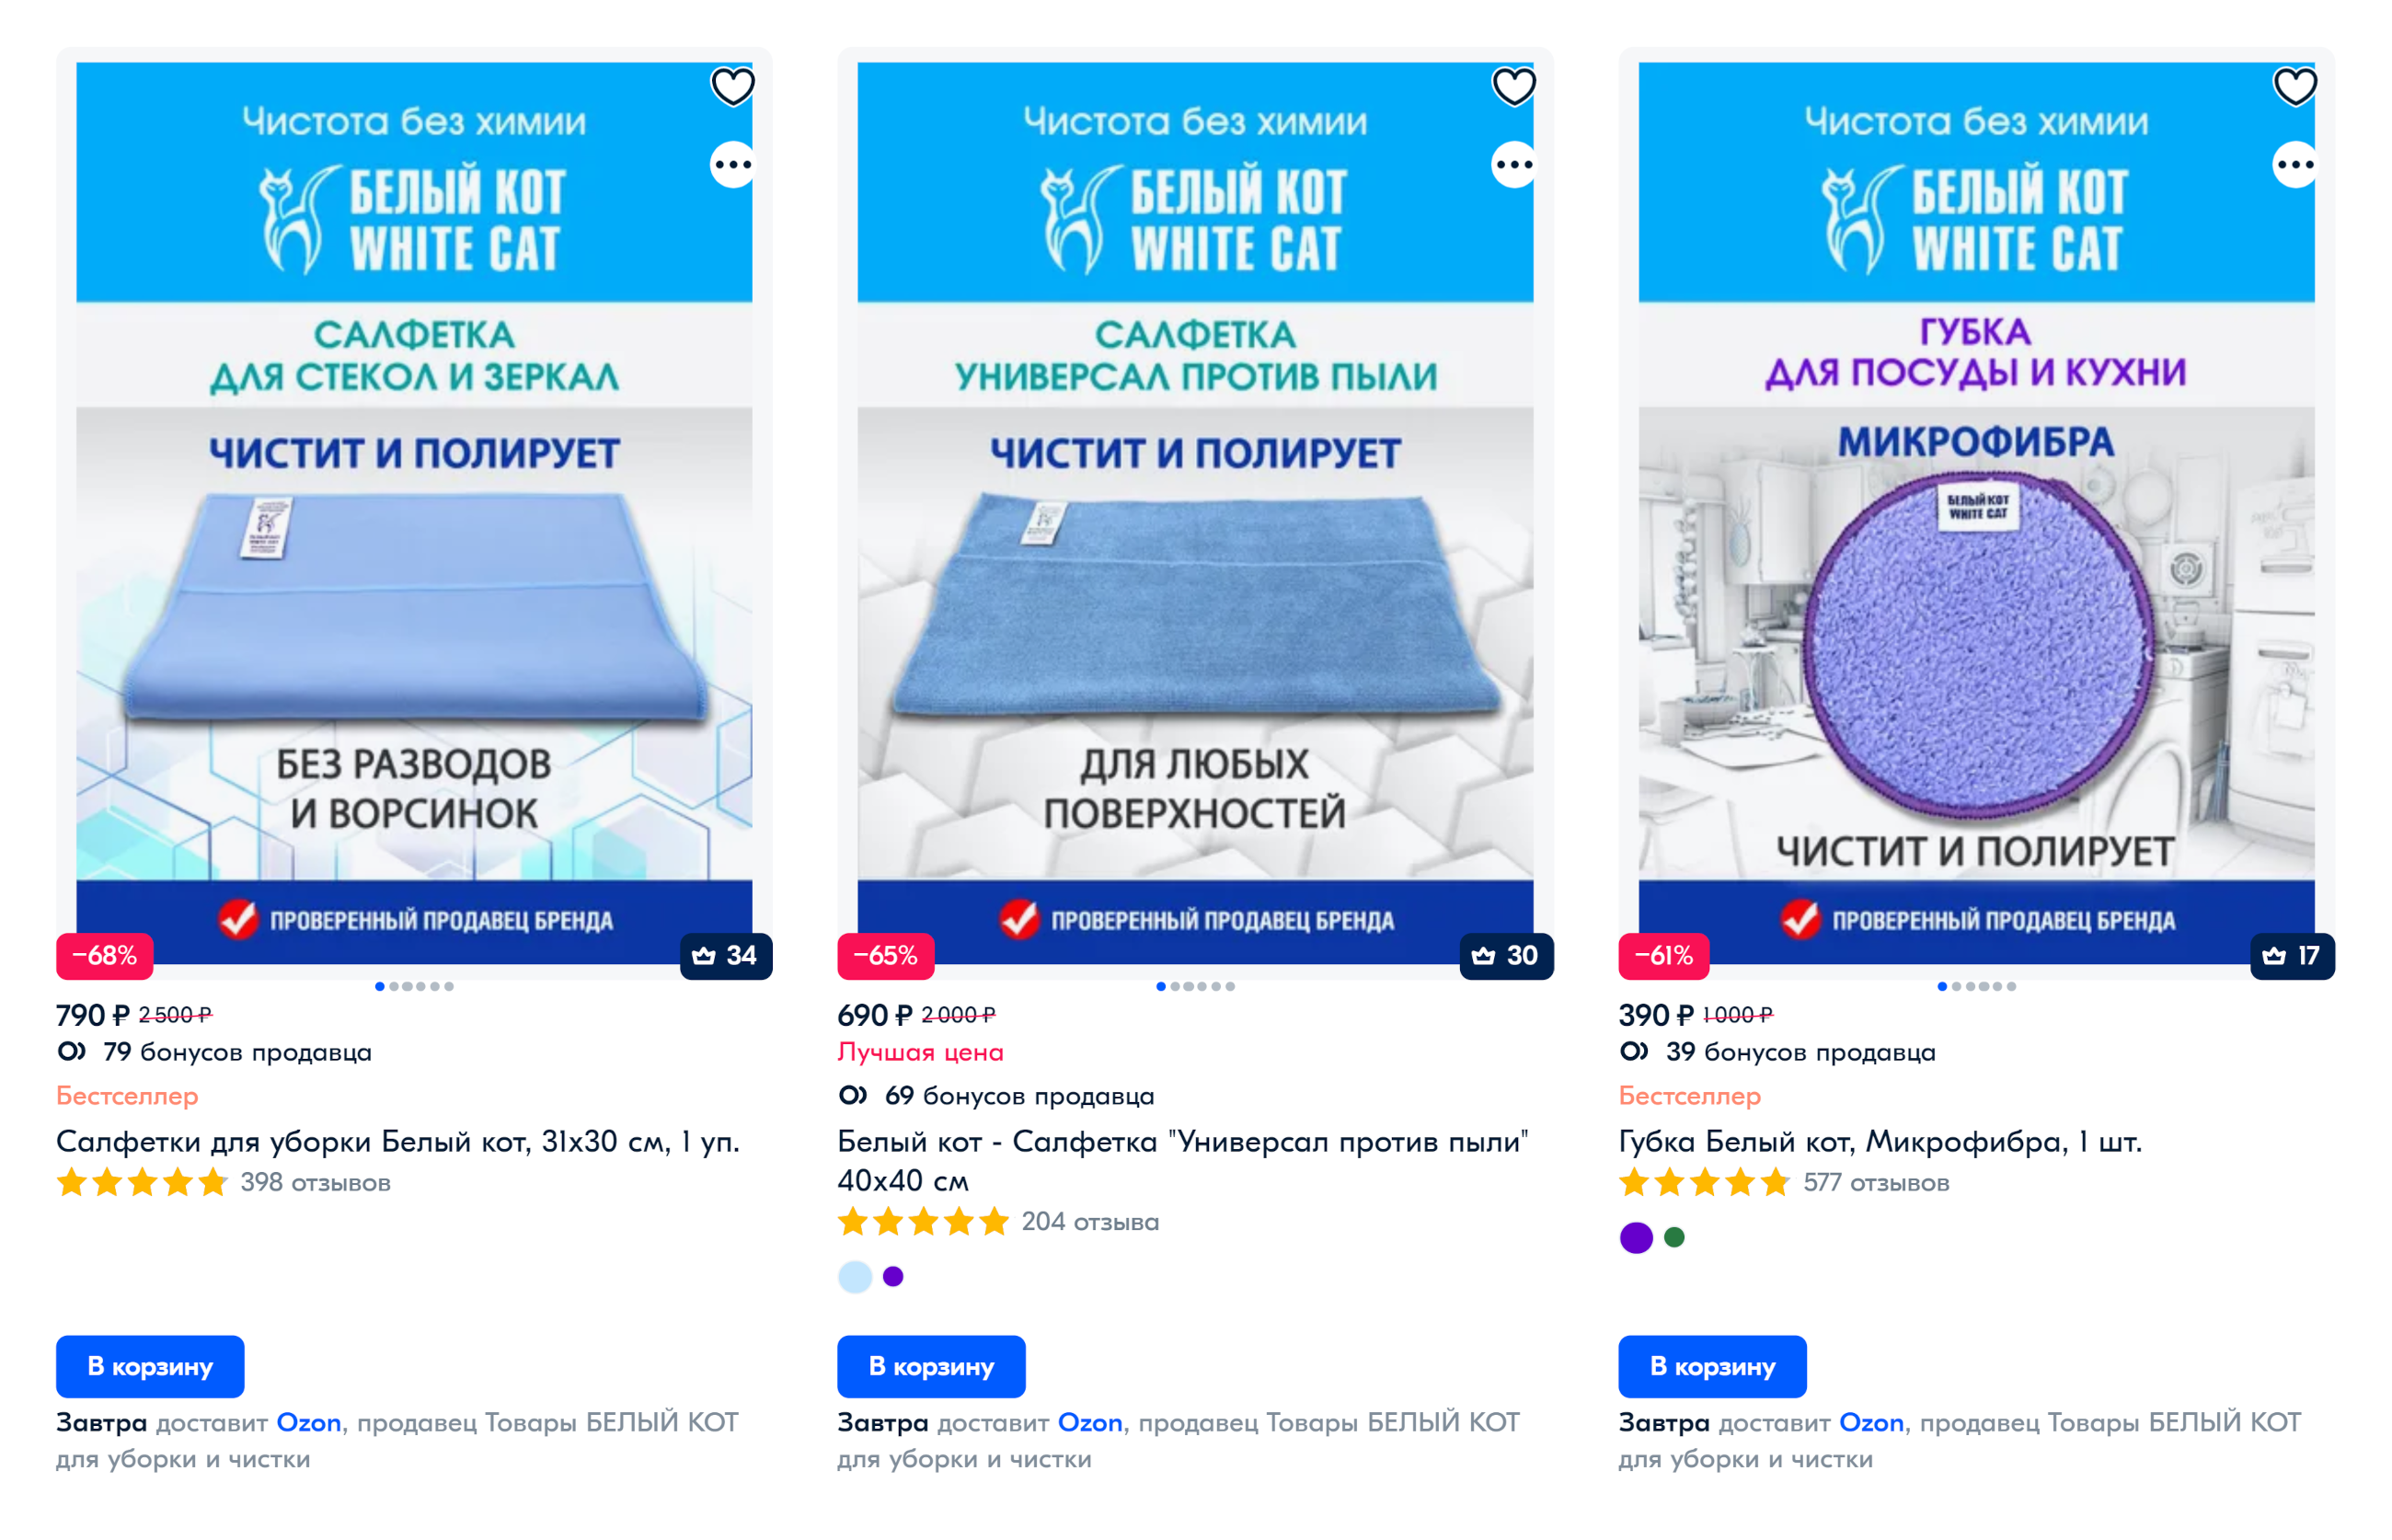 Это тряпочки фирмы «Белый кот» — они примерно в 10 раз дороже обычных, но иногда справляются с загрязнениями даже без химии. Источник: ozon.ru